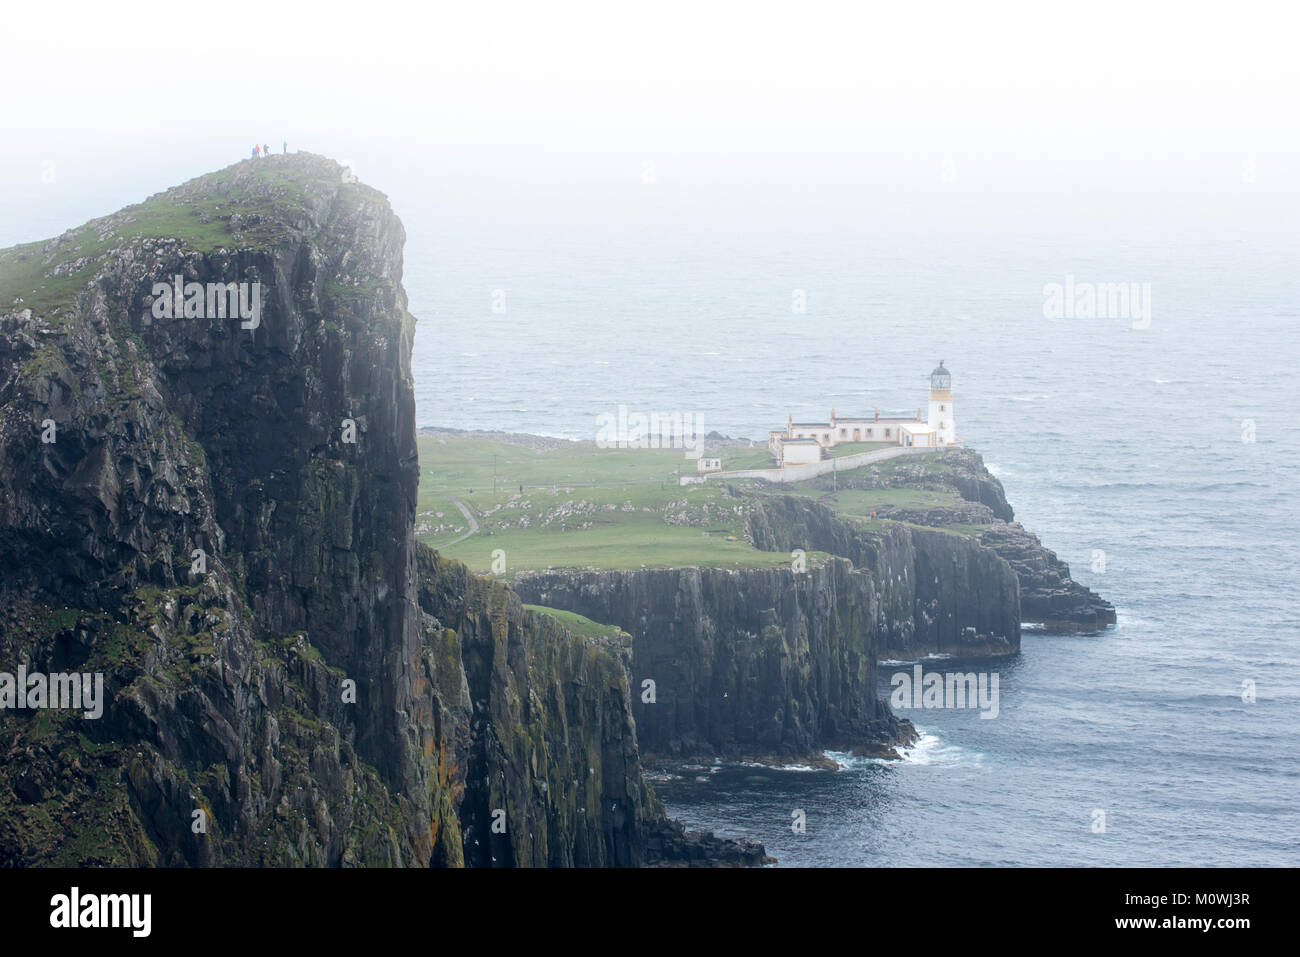 Les promeneurs sur la falaise regardant Neist Point Lighthouse dans la brume sur l'île de Skye, Hébrides intérieures, Highlands, Scotland, UK Banque D'Images